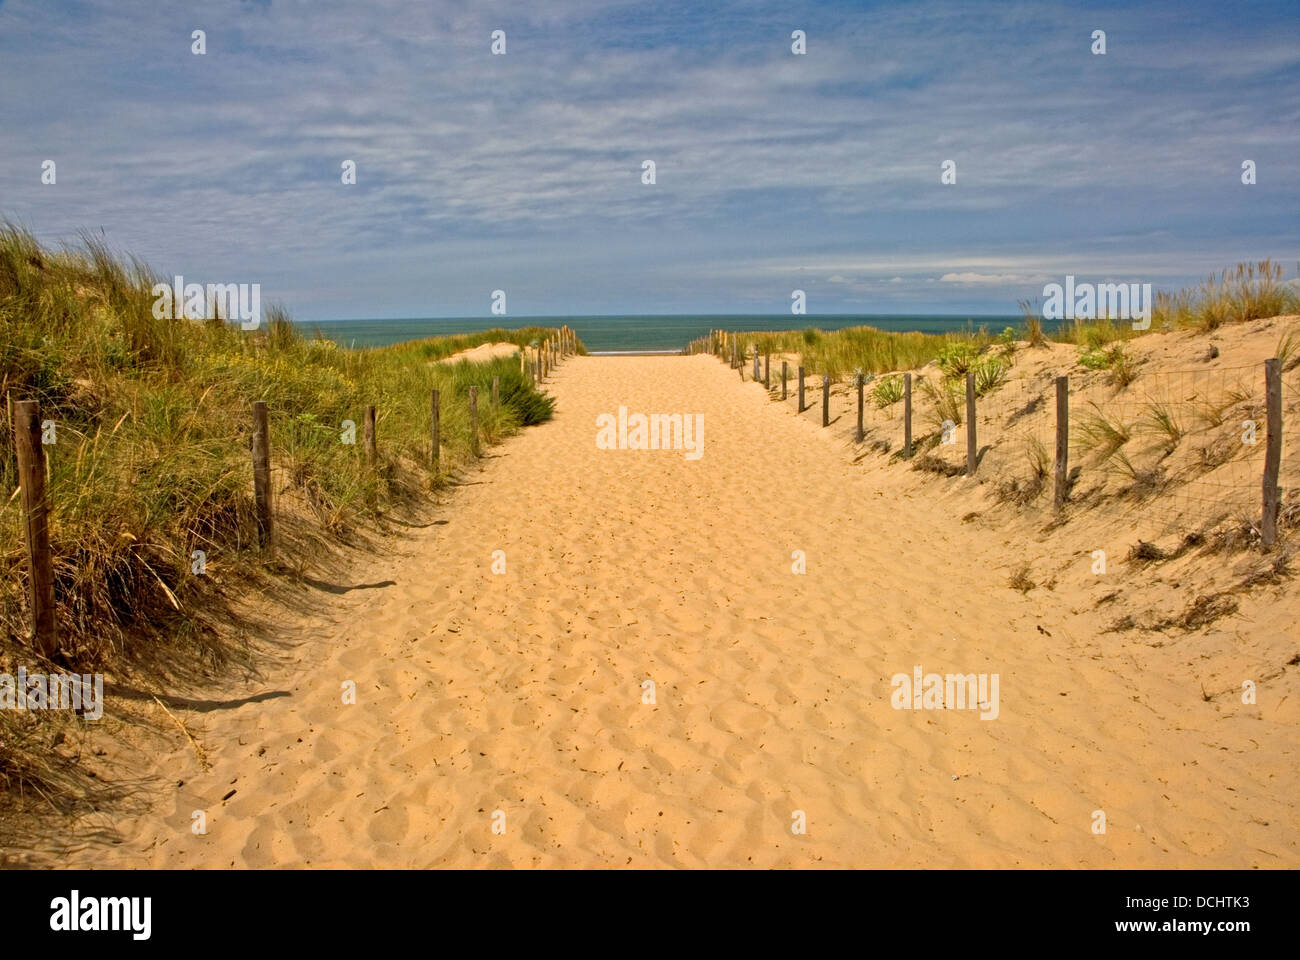 Ampia di sabbia set di percorso tra le recinzioni conduce verso la spiaggia e l'oceano atlantico. Foto Stock